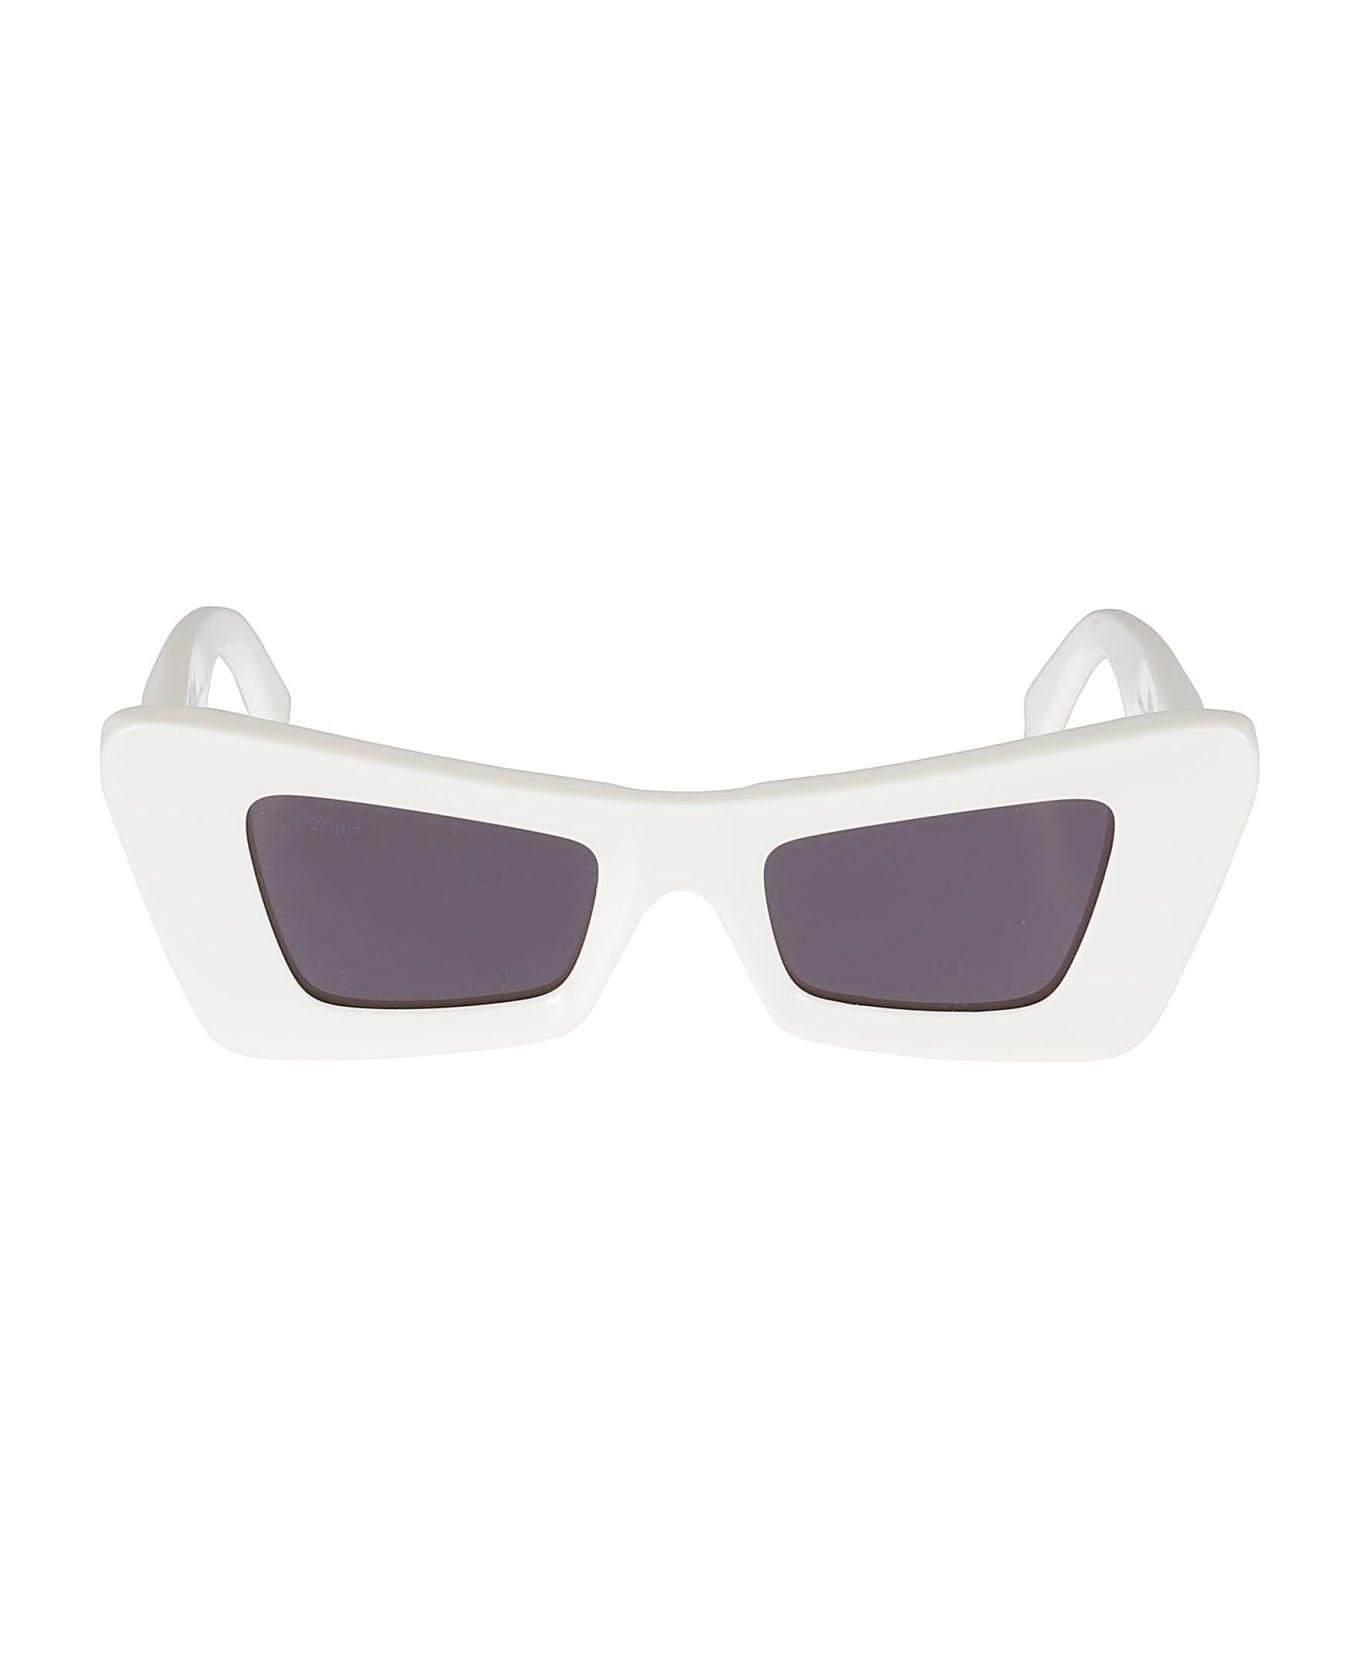 Off-White Accra Sunglasses - White